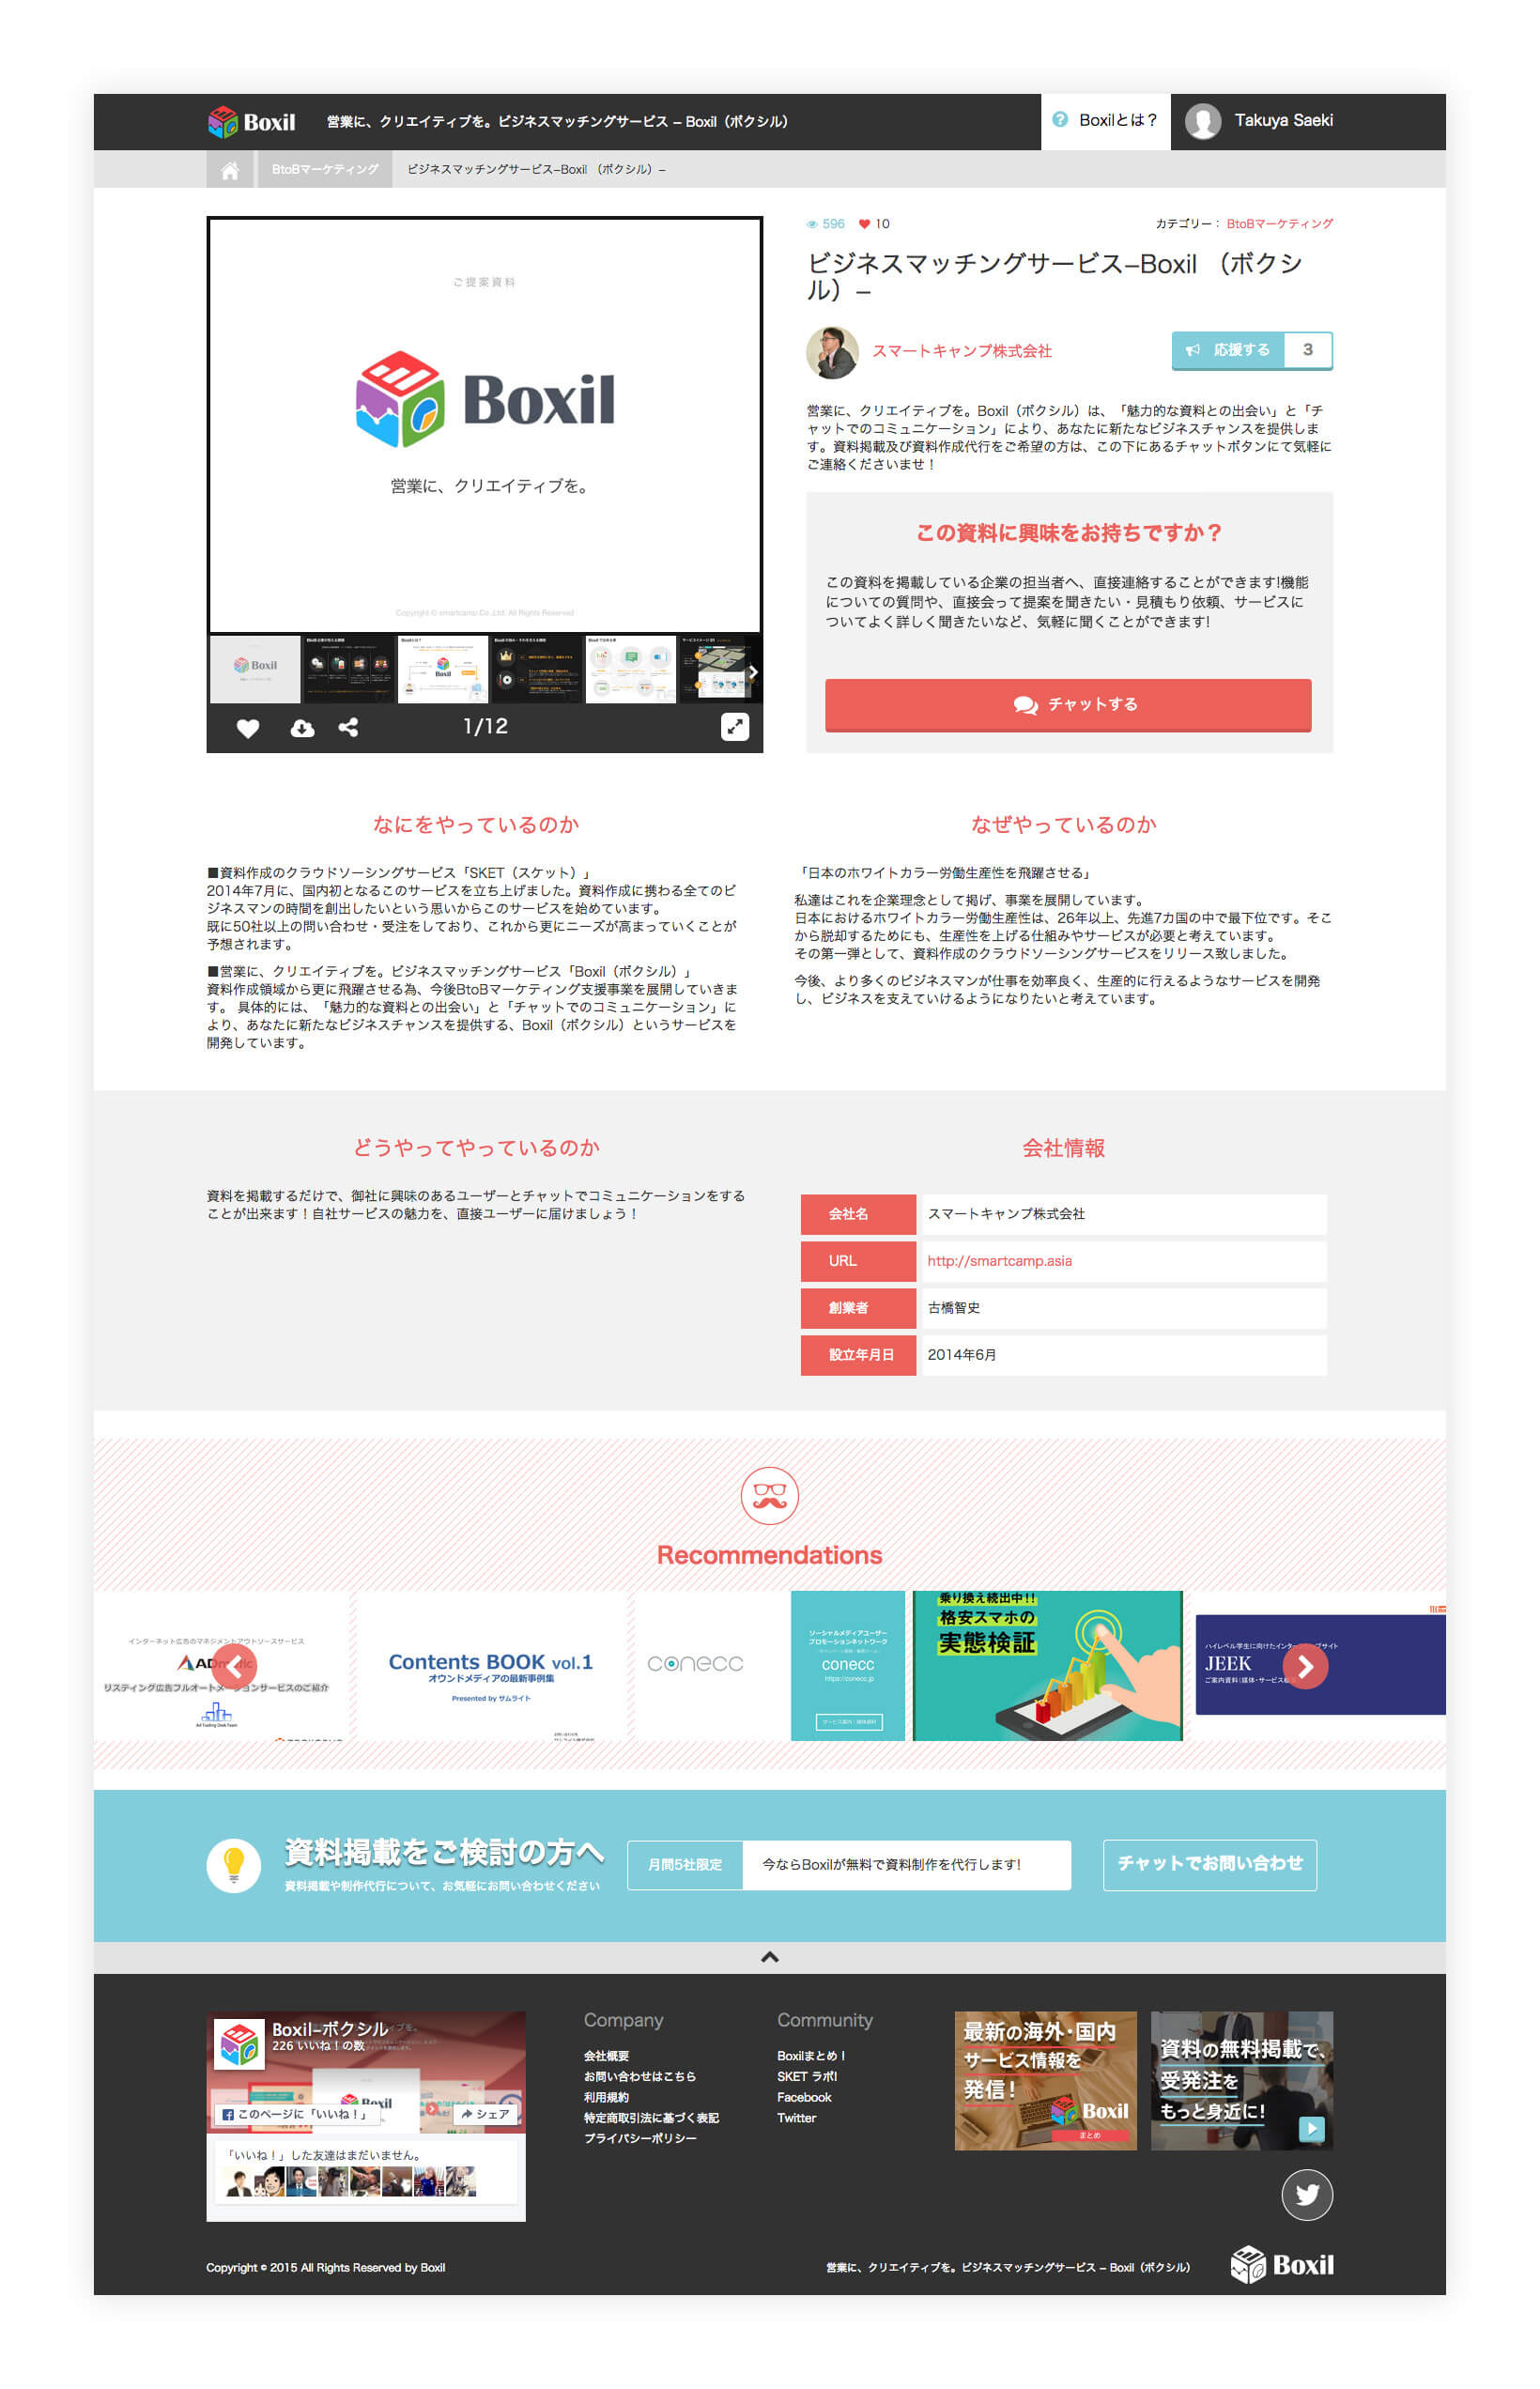 ビジネスマッチングサービス「Boxil」ウェブデザイン